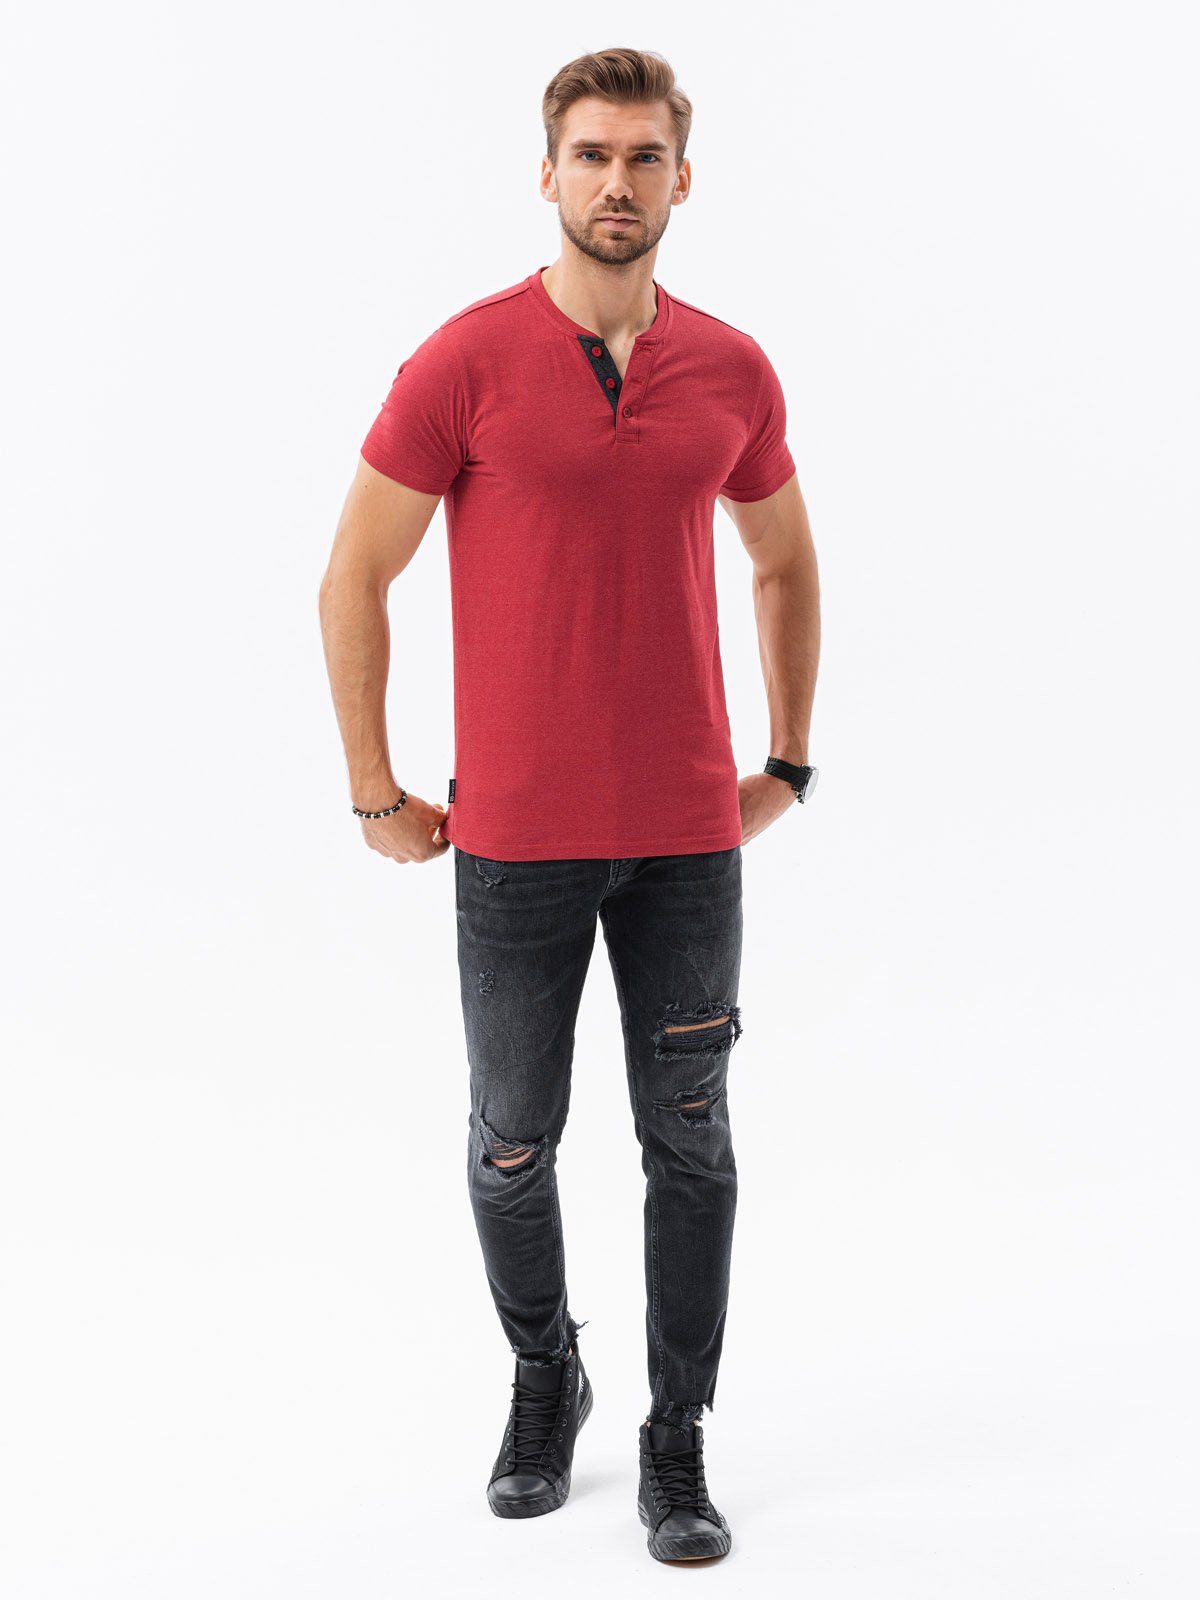 OMBRE T-Shirt Einfarbiges Herren-T-Shirt S1390 M rot - meliert